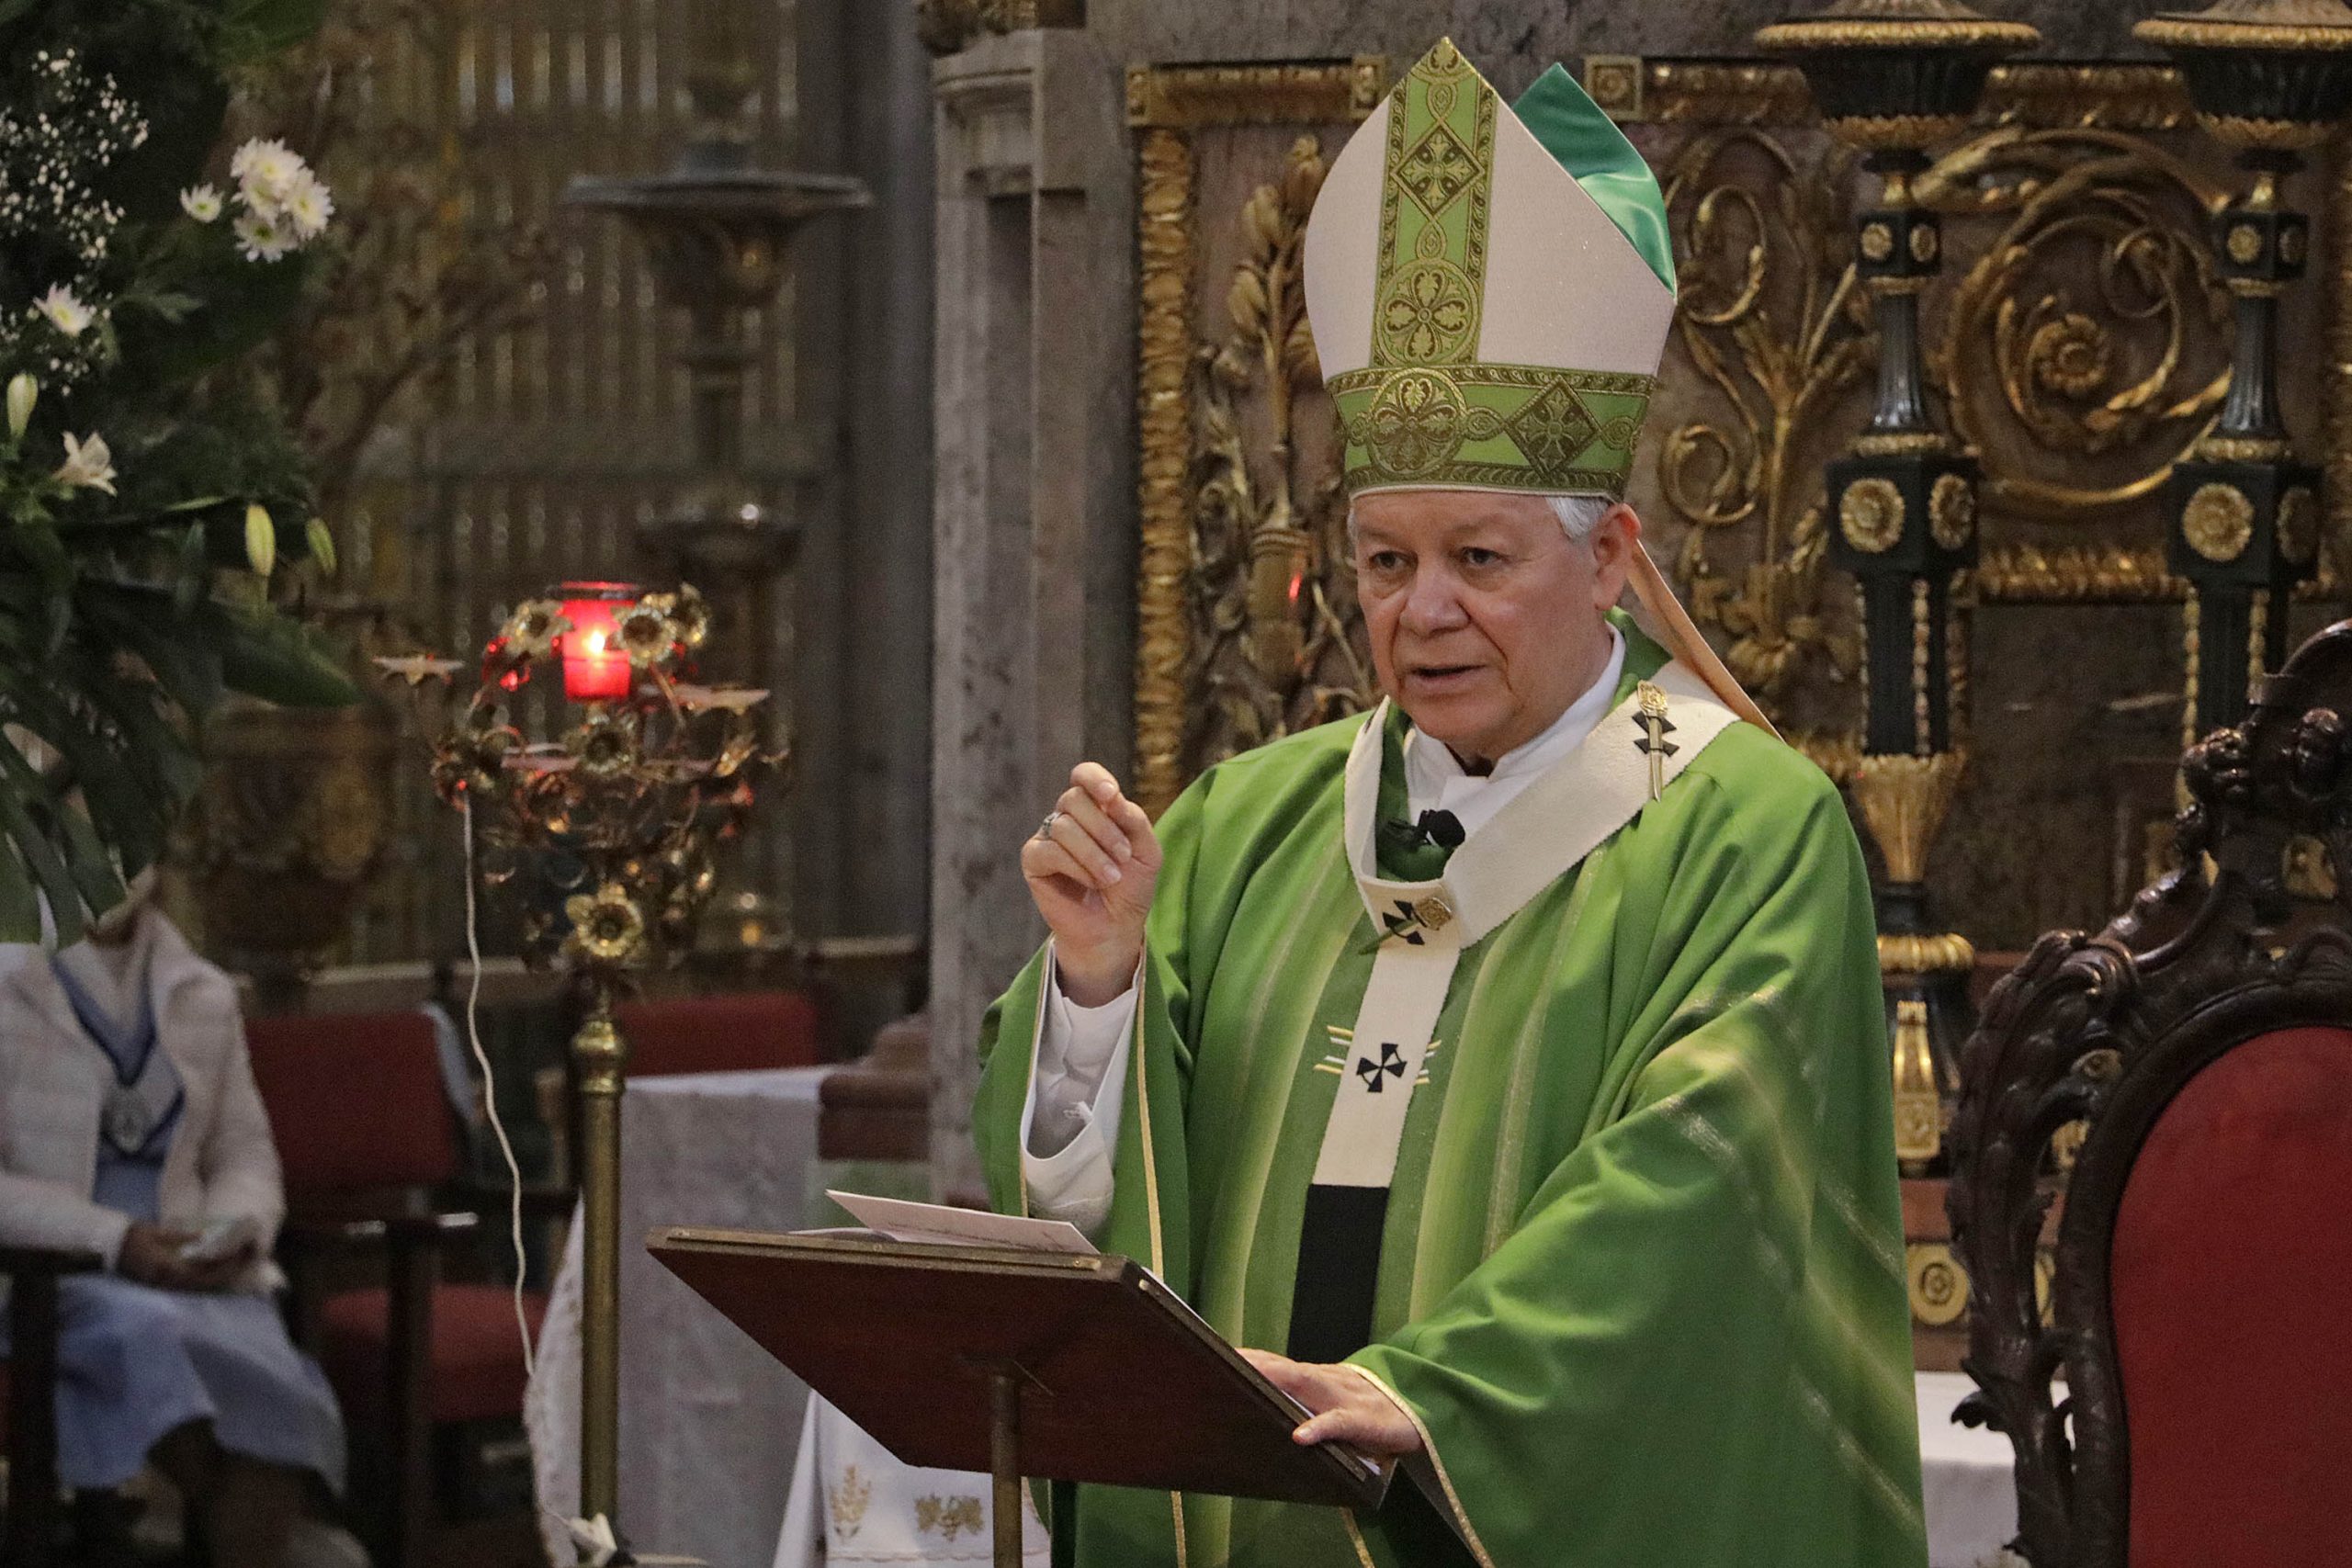 Arzobispo ofrece una oración ante la guerra en Ucrania y crimen en Puebla